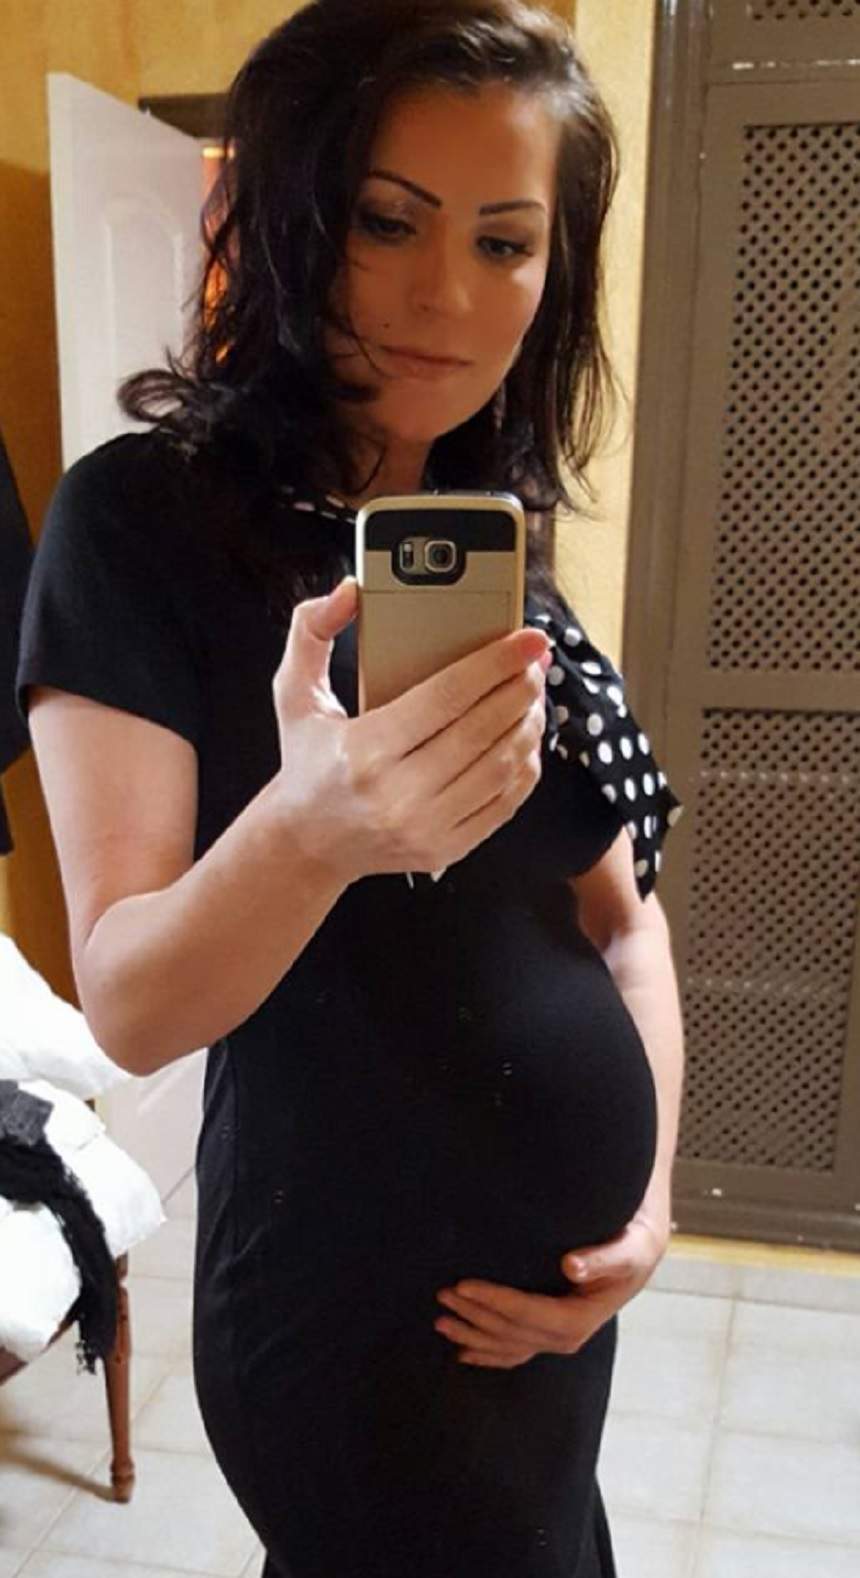 FOTO / Ancuța Cârcu, însărcinată în șase luni. "Fiecare copil vine pe lume cu un mesaj"